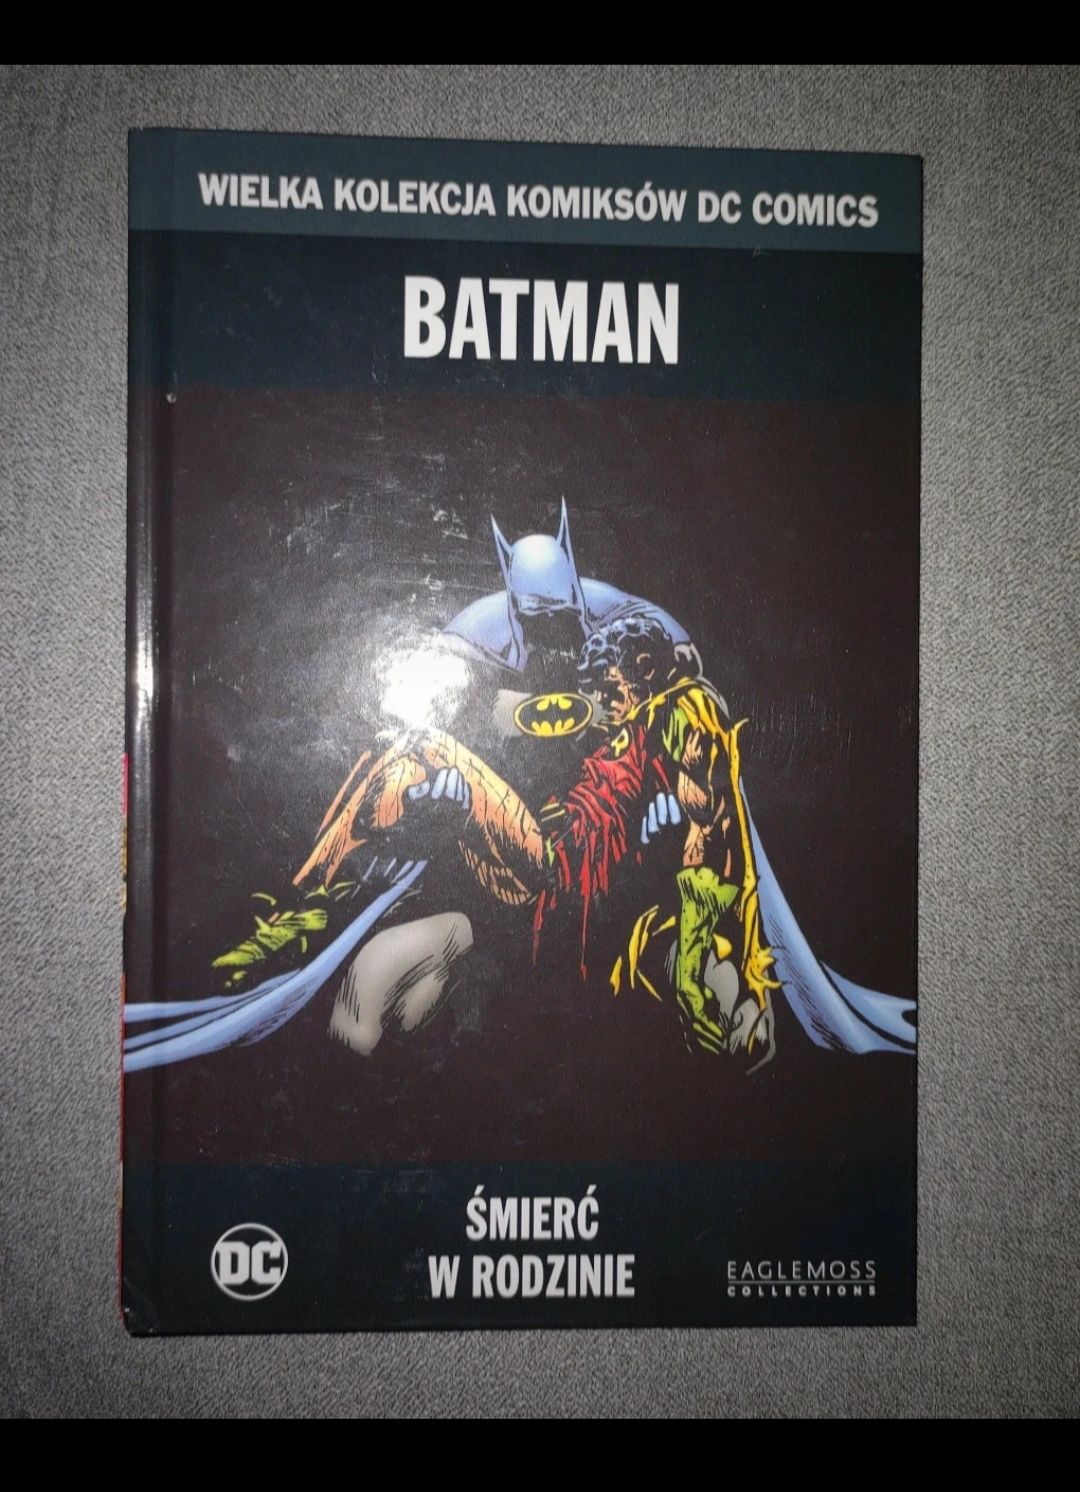 Wielka Kolekcja Komiksów DC Comics numer 9 - Batman: Śmierć w rodzinie